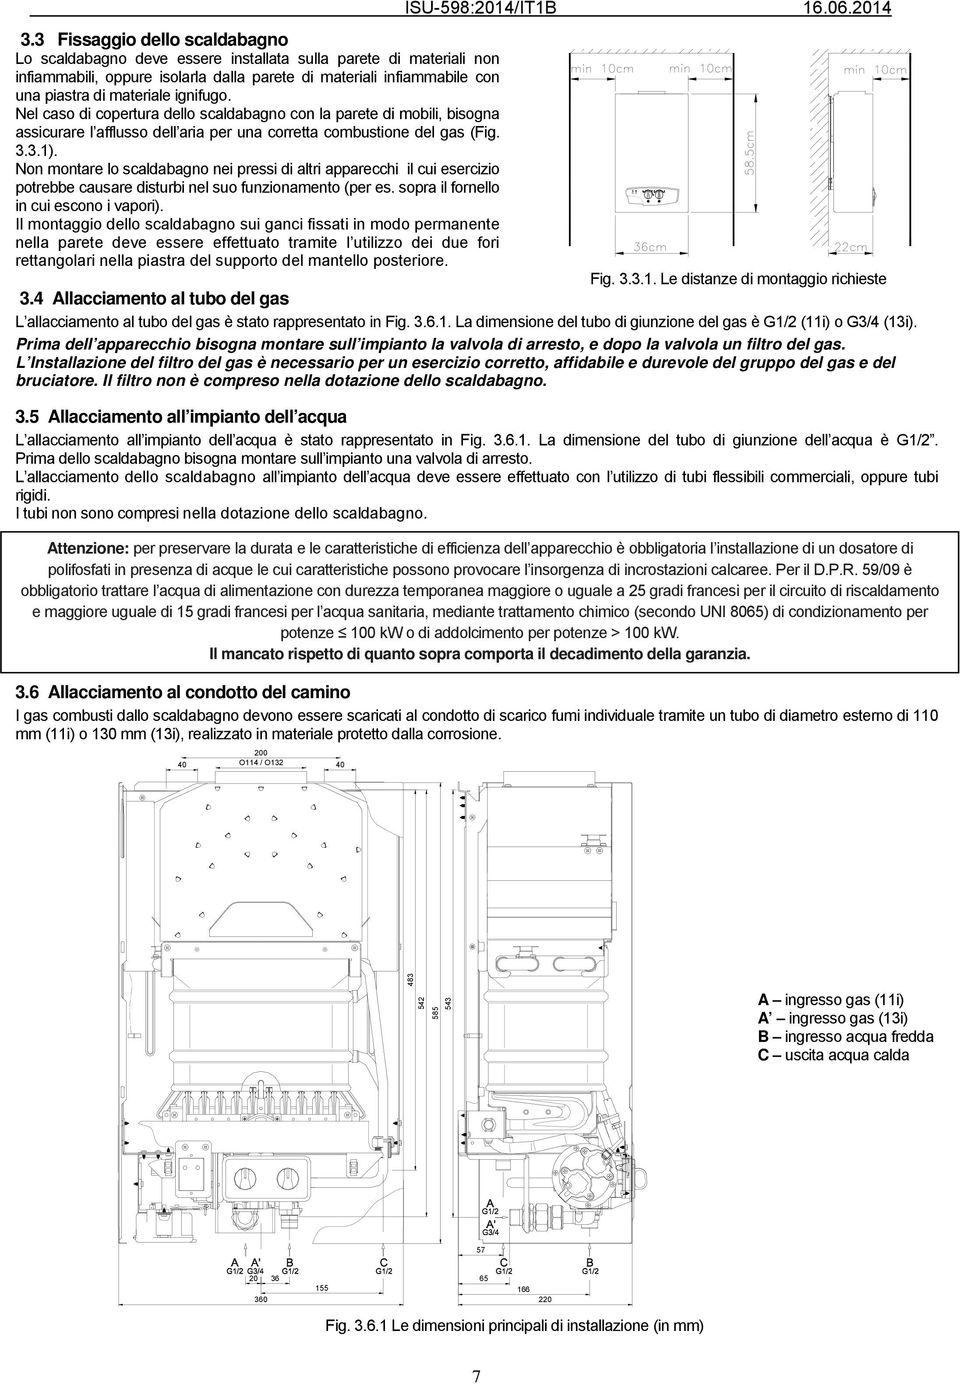 ignifugo. Nel caso di copertura dello scaldabagno con la parete di mobili, bisogna assicurare l afflusso dell aria per una corretta combustione del gas (Fig. 3.3.1).